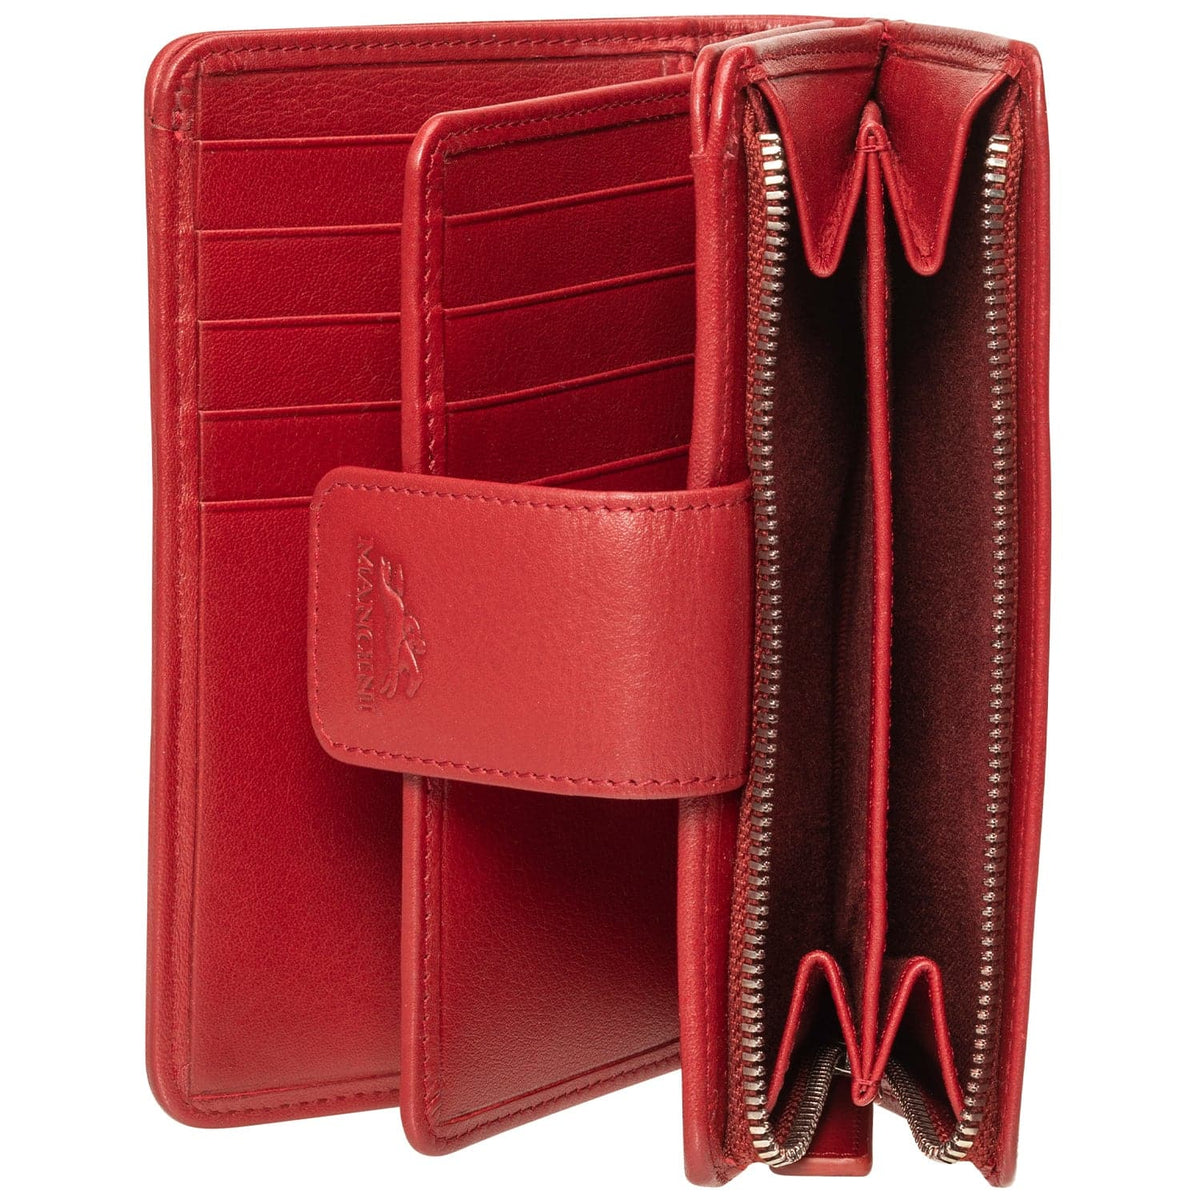 Mancini Basket Weave RFID Secure Medium Clutch Wallet